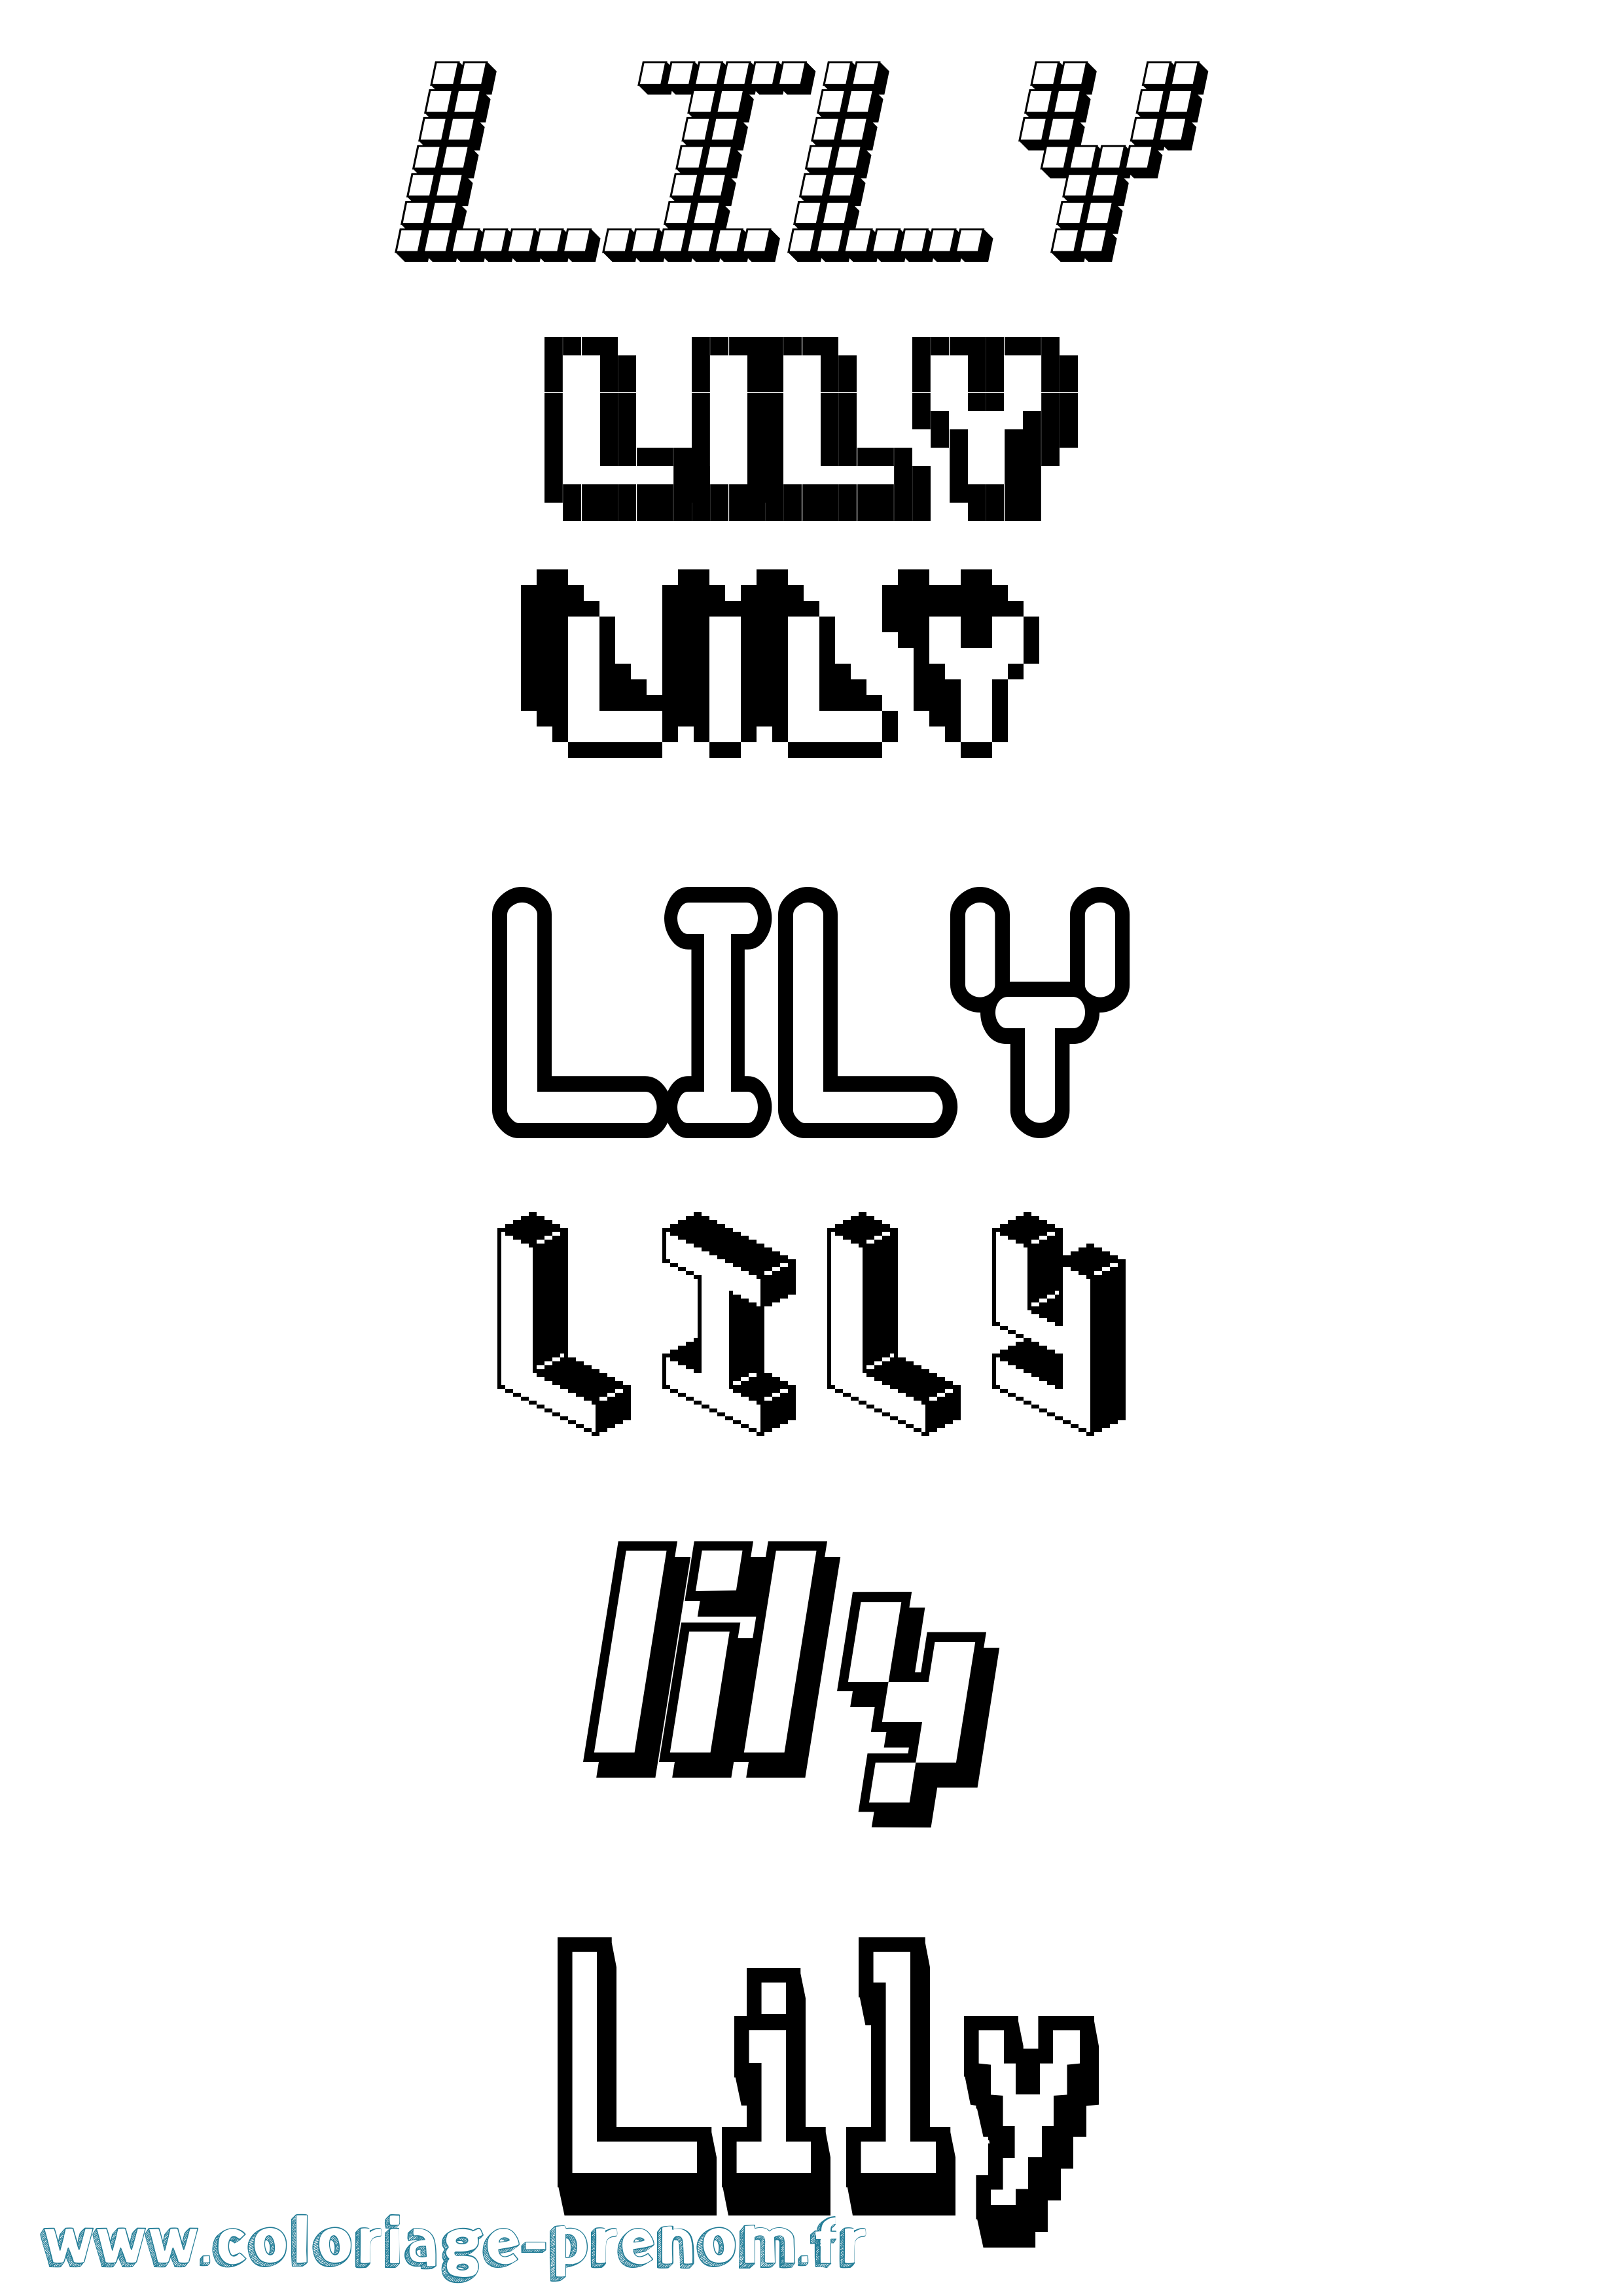 Coloriage prénom Lily Pixel